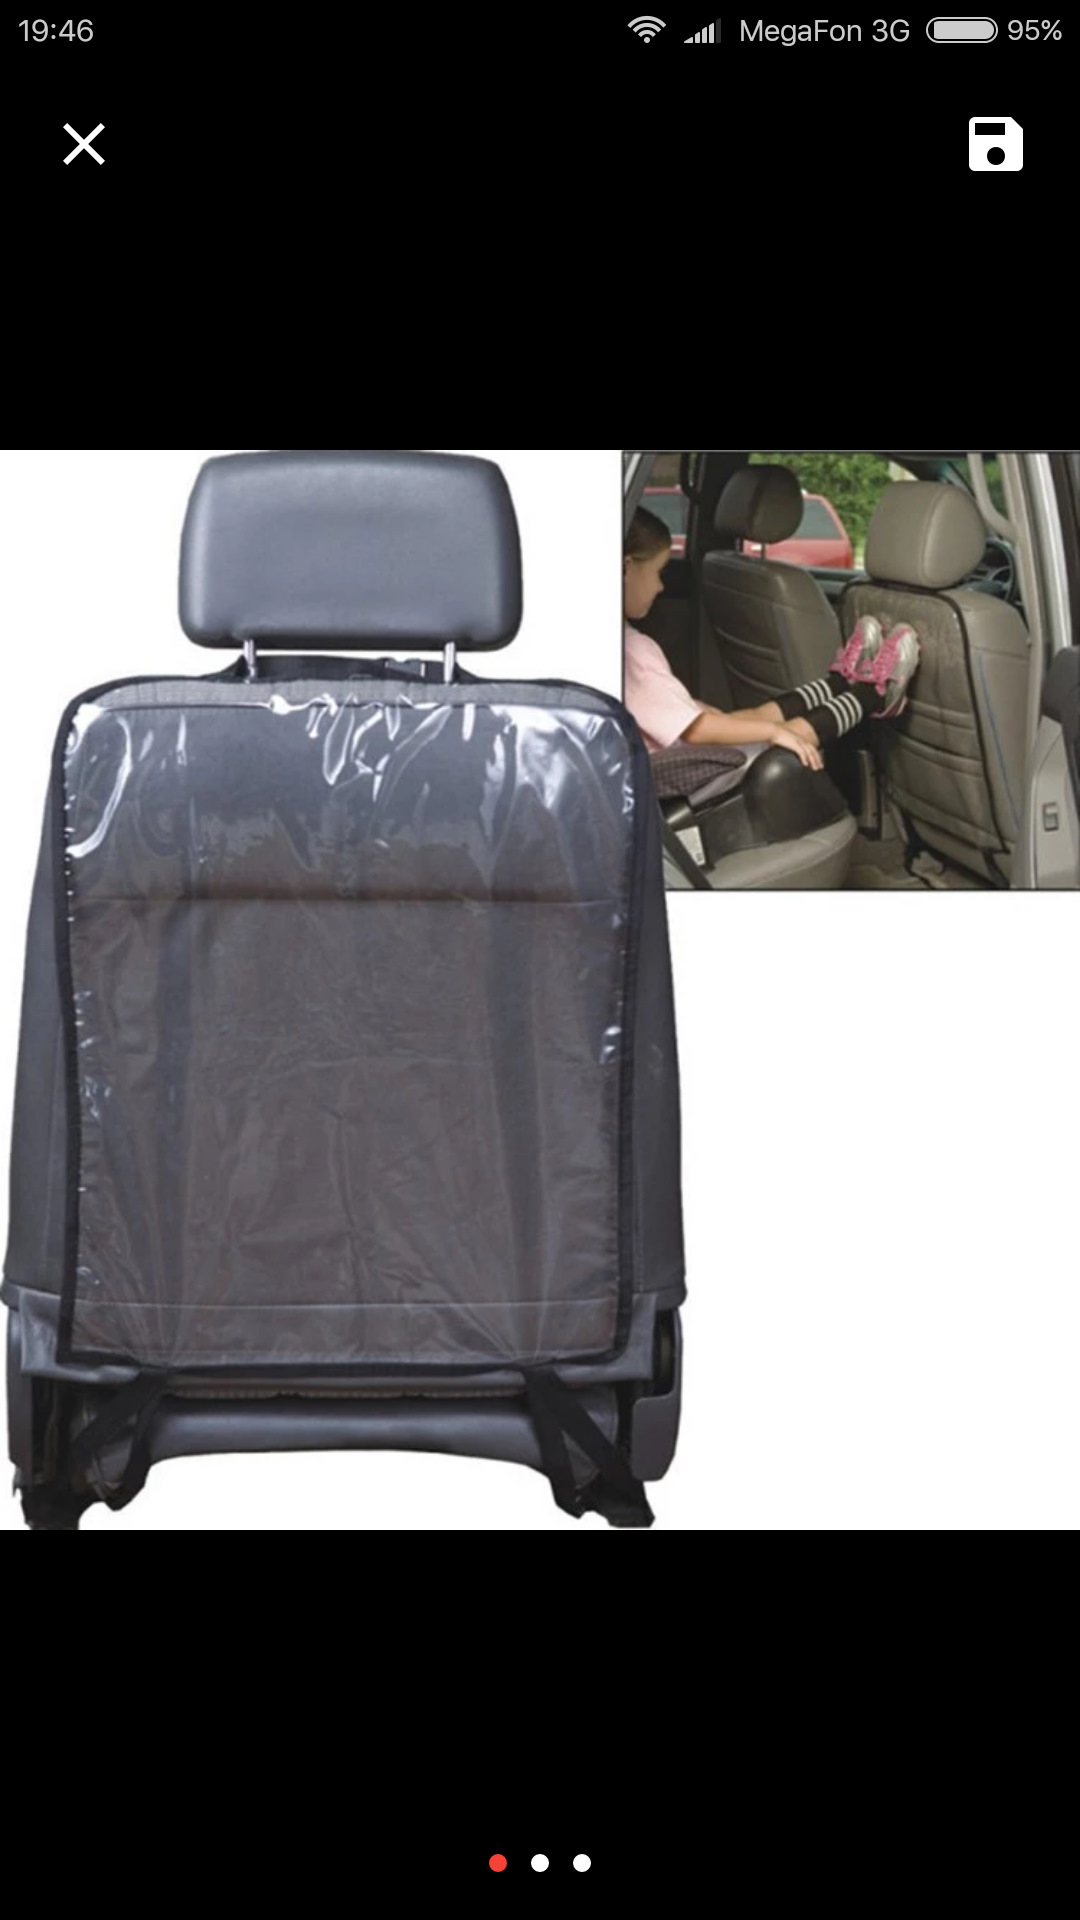 Защитная накидка на спинку. Exeed RX накидка защитная для спинки сиденья. Защитная накидка на сиденье автомобиля от детей. Накидка на сиденье автомобиля от ног ребенка. Защита сиденья от грязных ног ребенка.